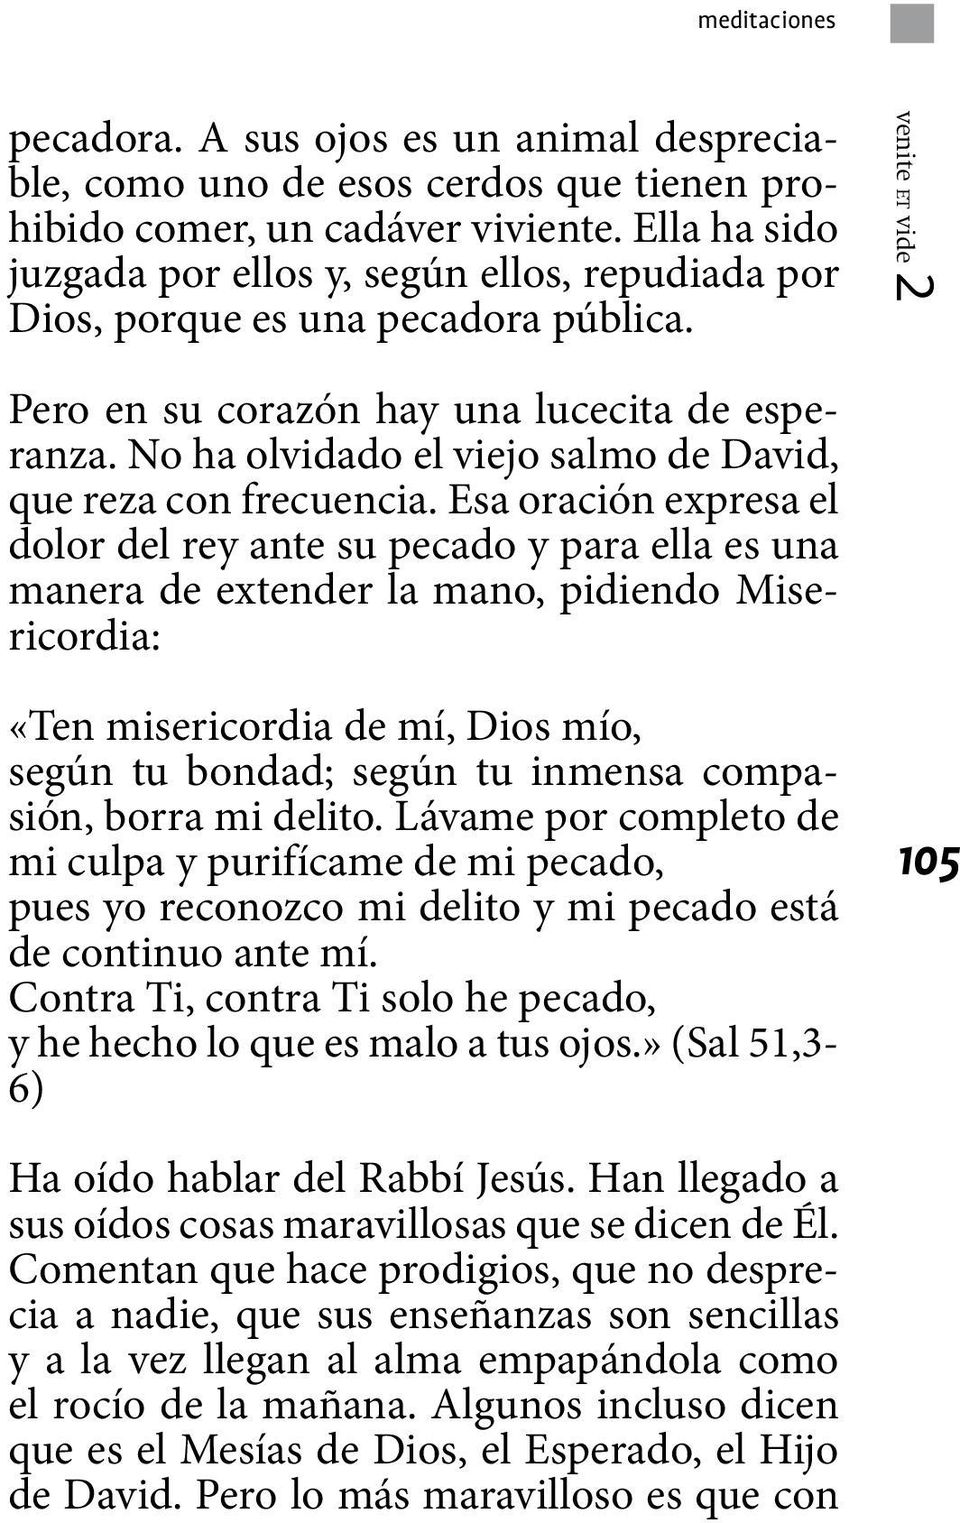 No ha olvidado el viejo salmo de David, que reza con frecuencia.